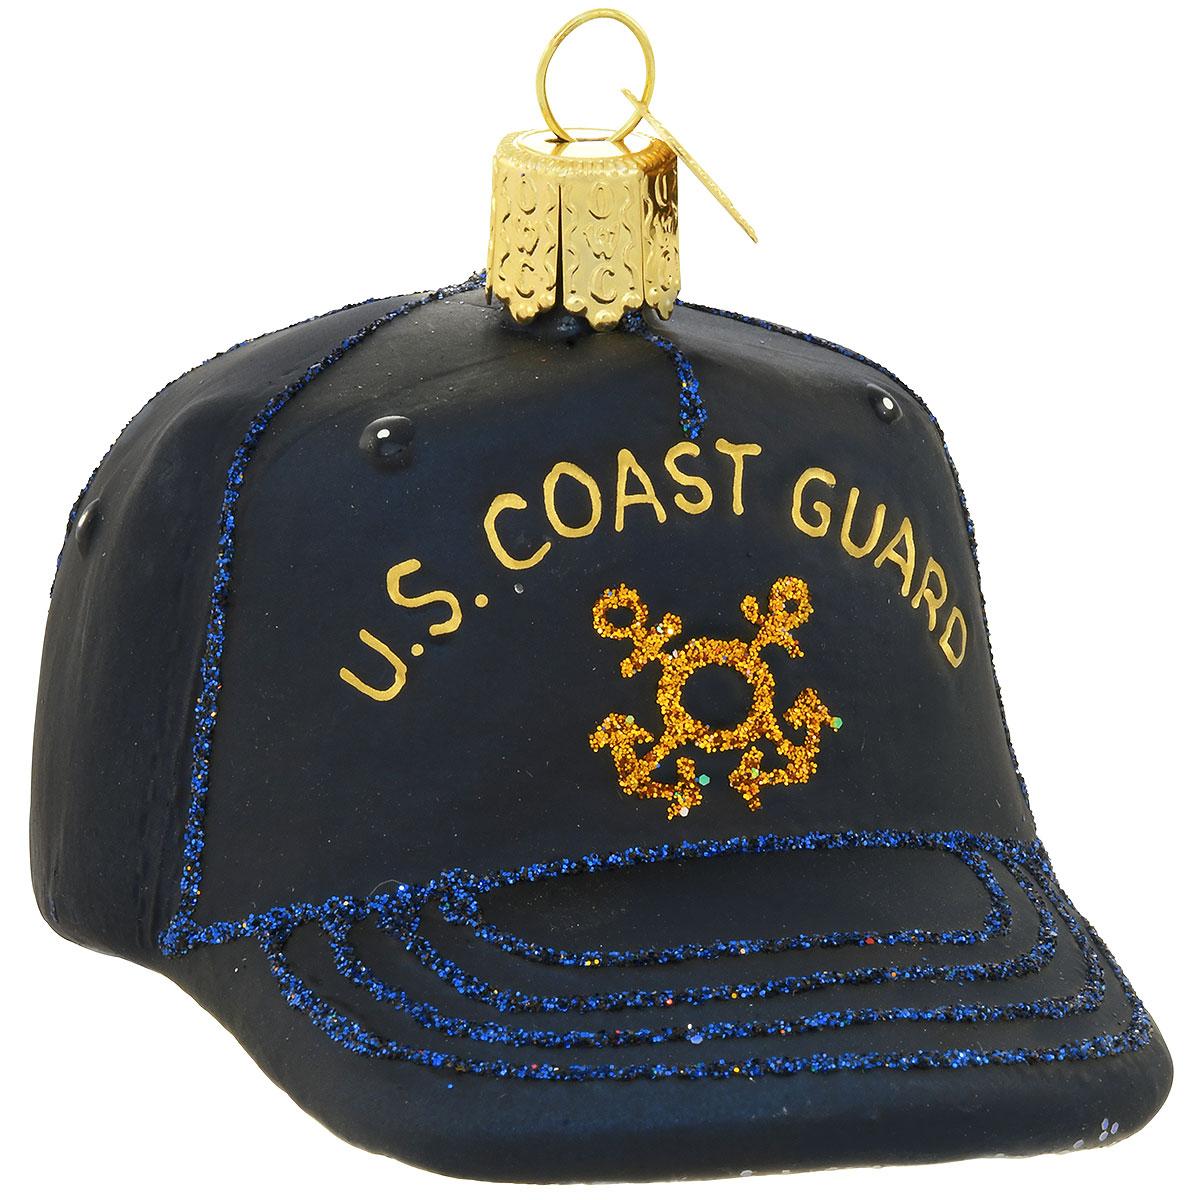 Coast Guard Cap Glass Ornament